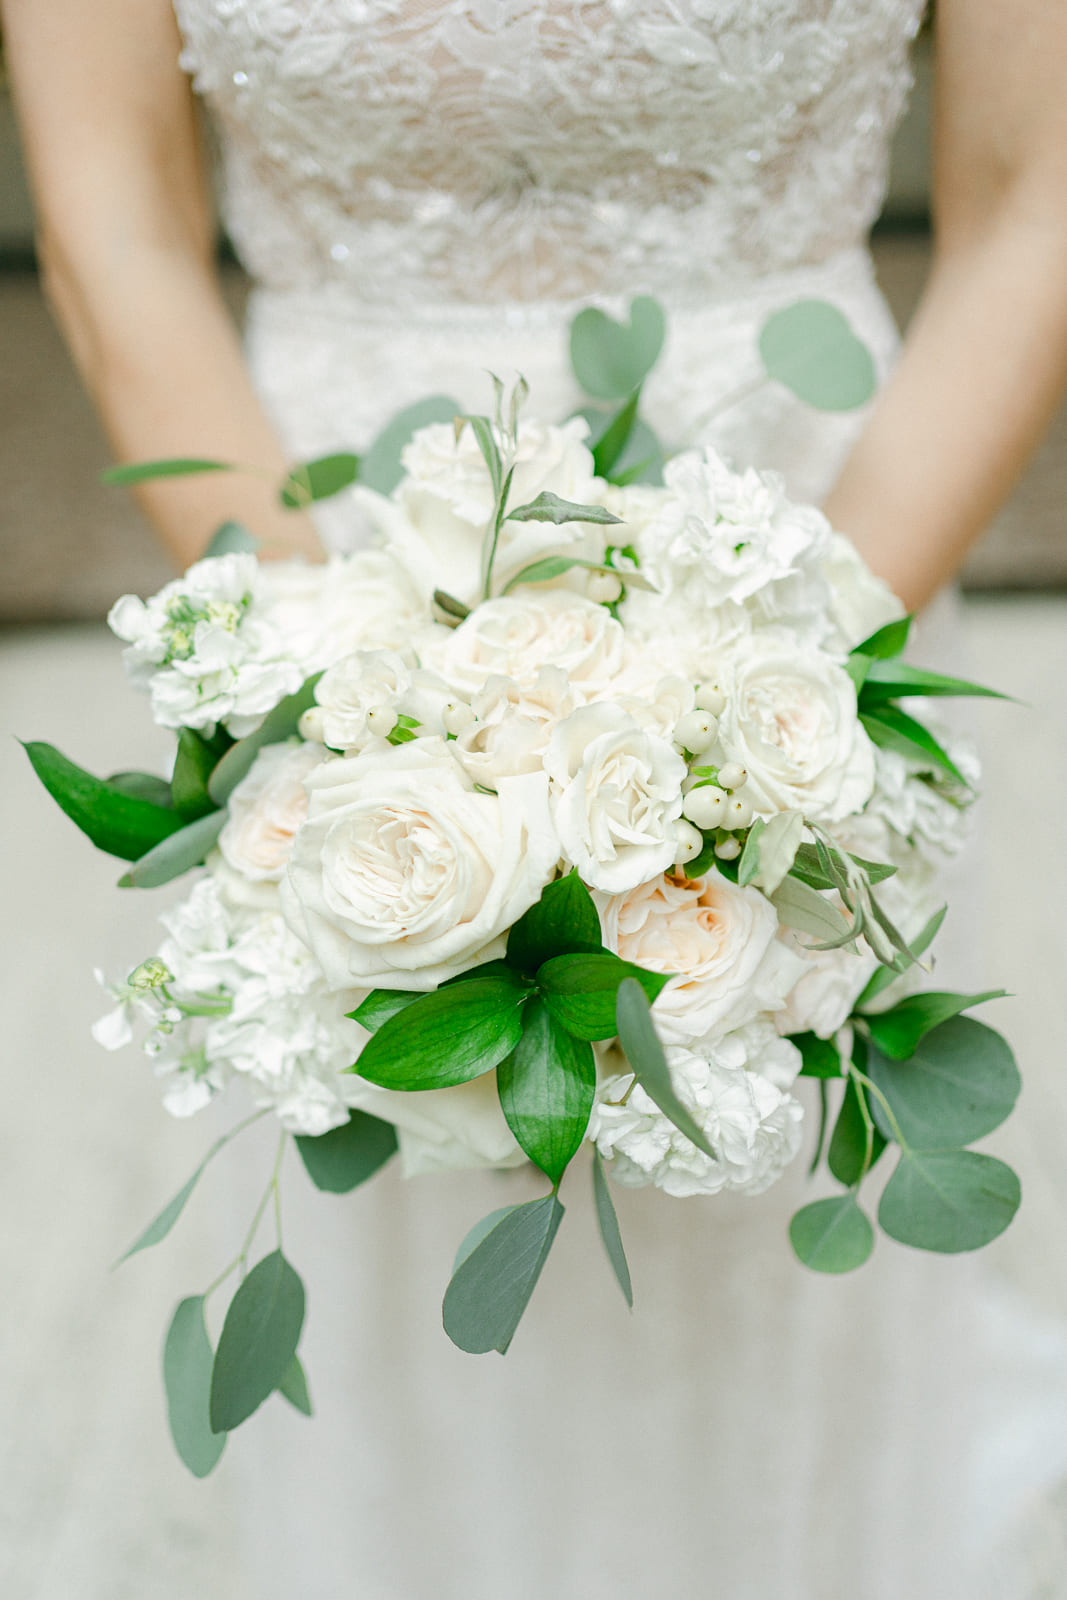 Detailfoto von Brautbouquet mit weißen Rosen und Braut im Hintergrund